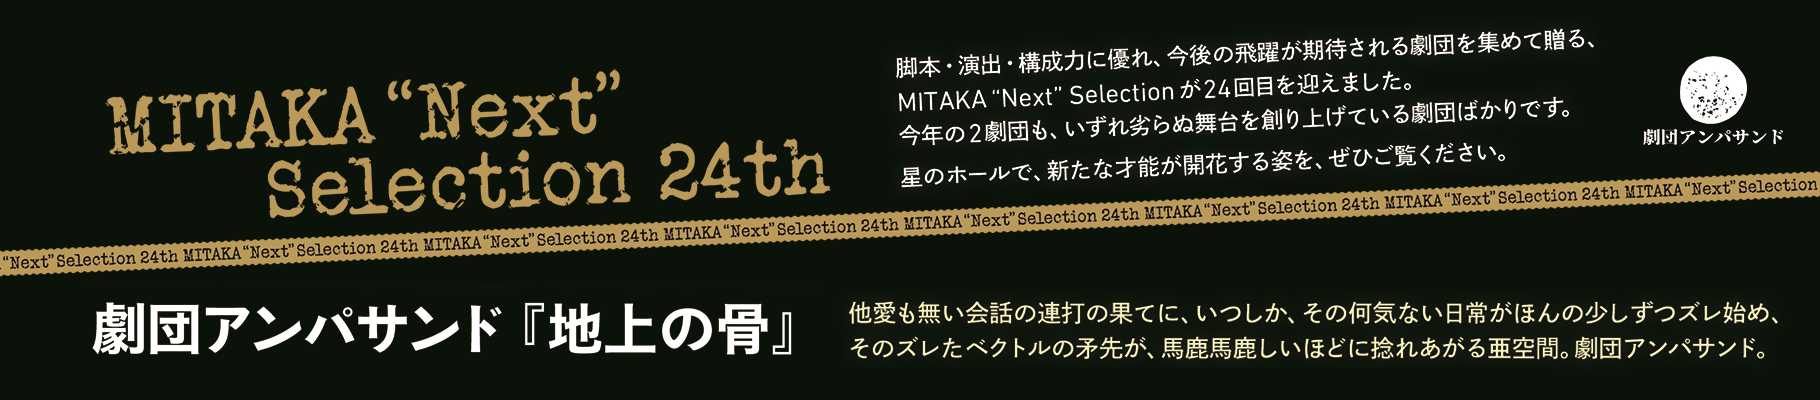 MITAKA“Next”Selection 24th 劇団アンパサンド『地上の骨』